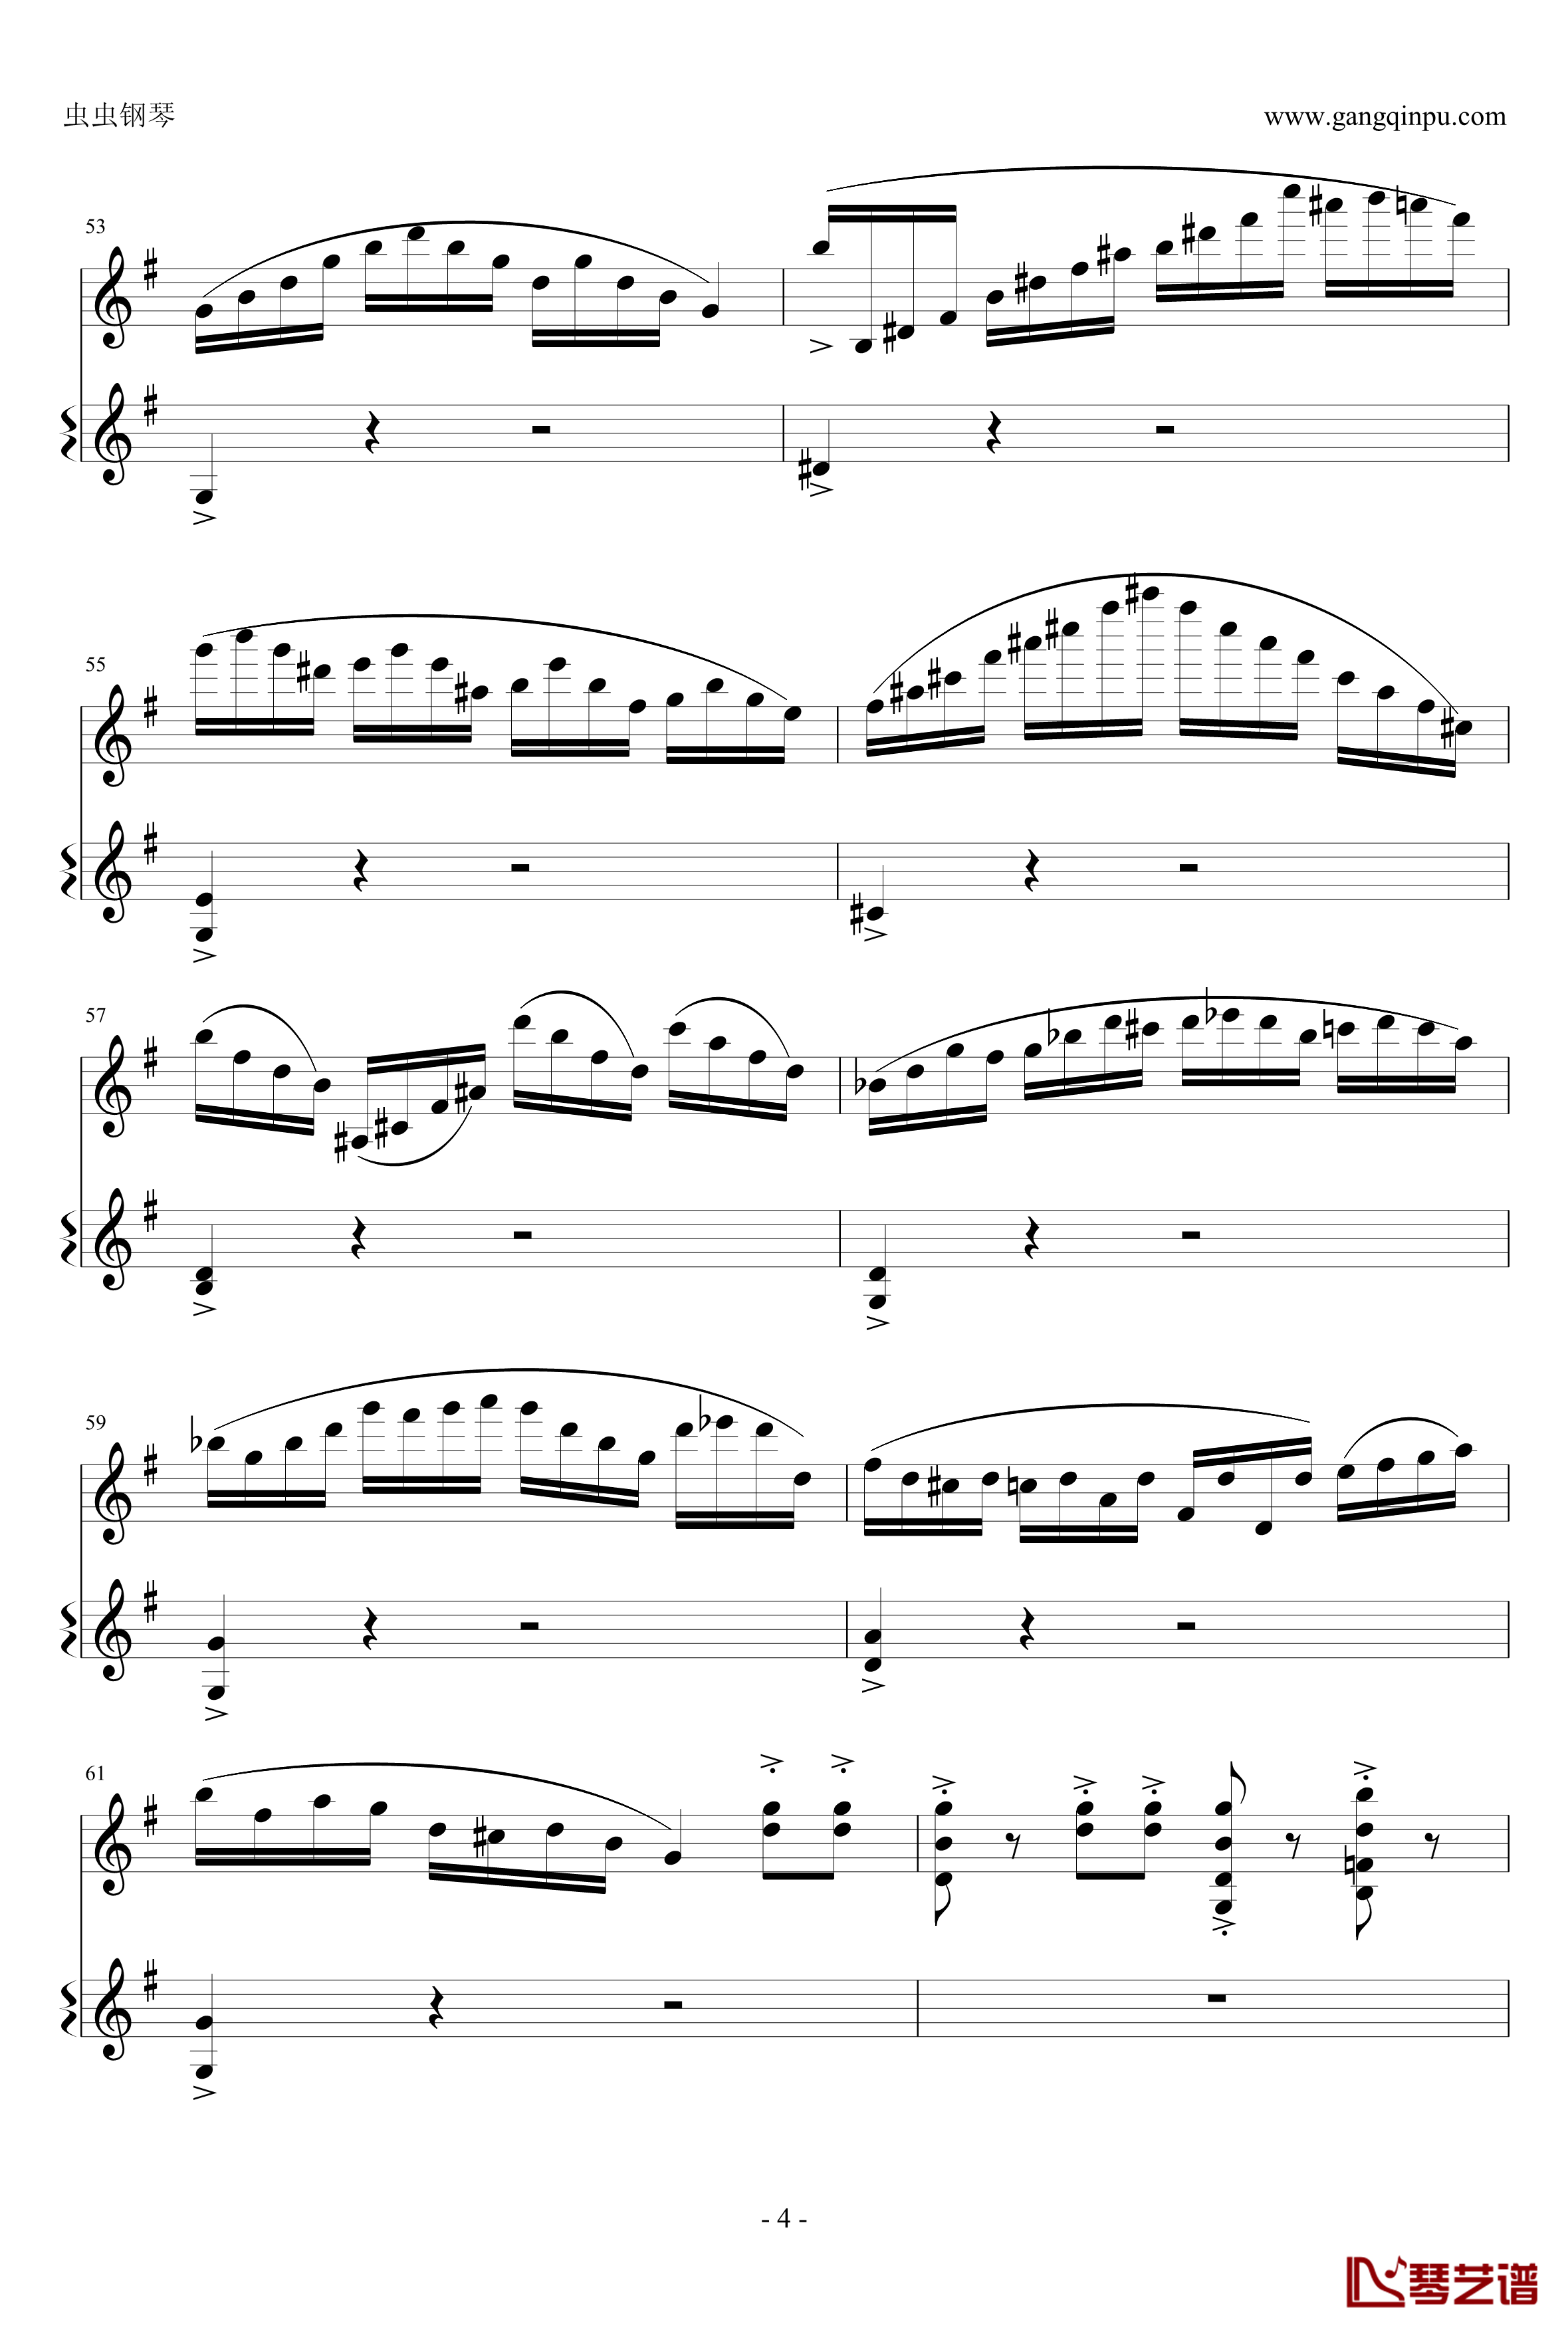 意大利国歌钢琴谱-变奏曲修改版-DXF4